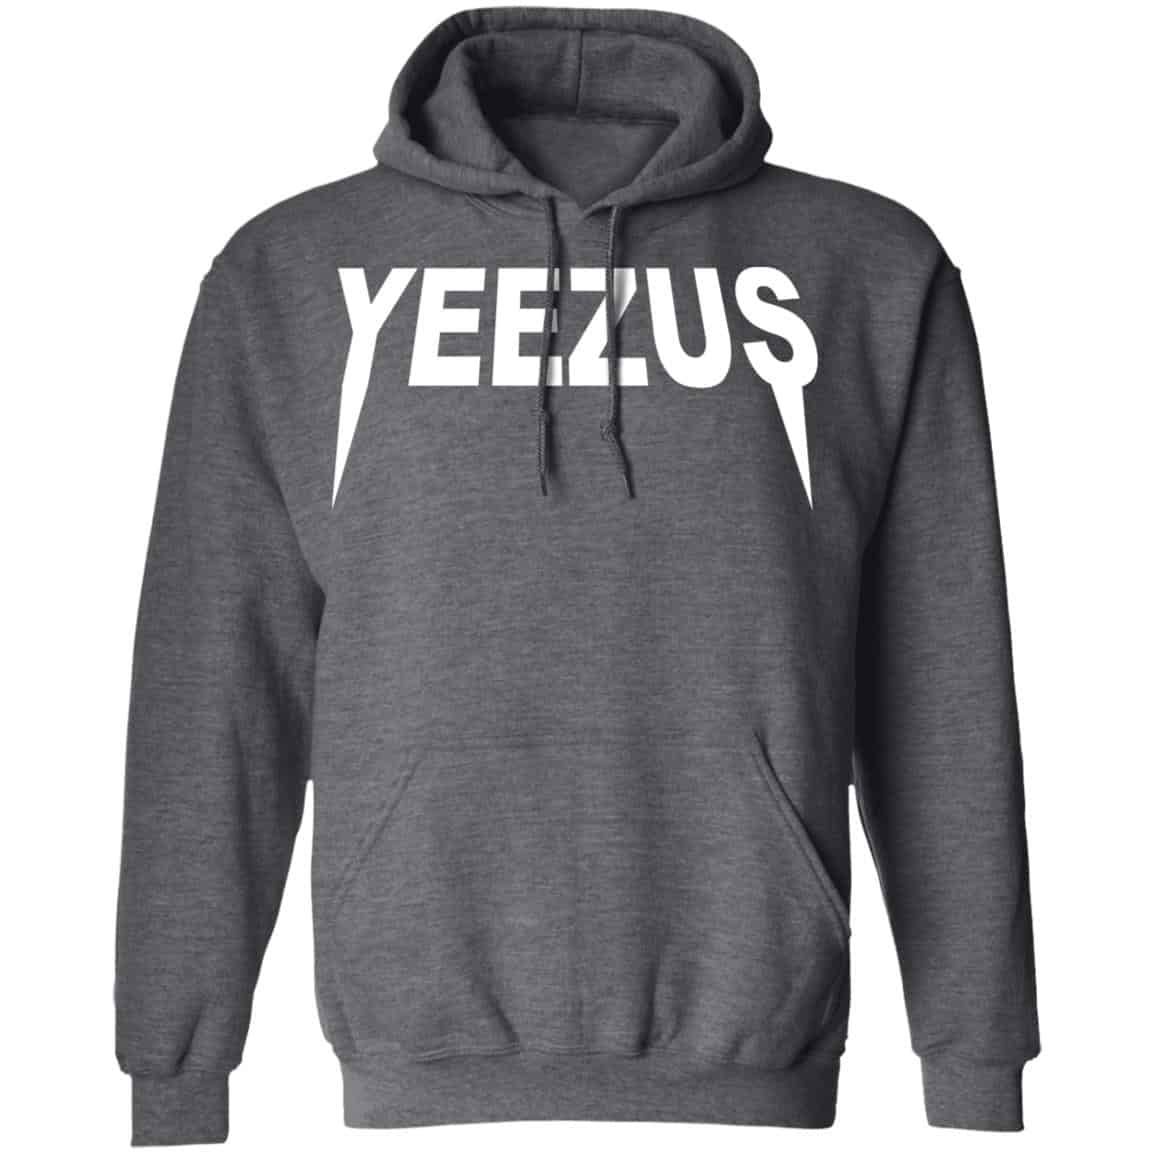 yeezus clothing